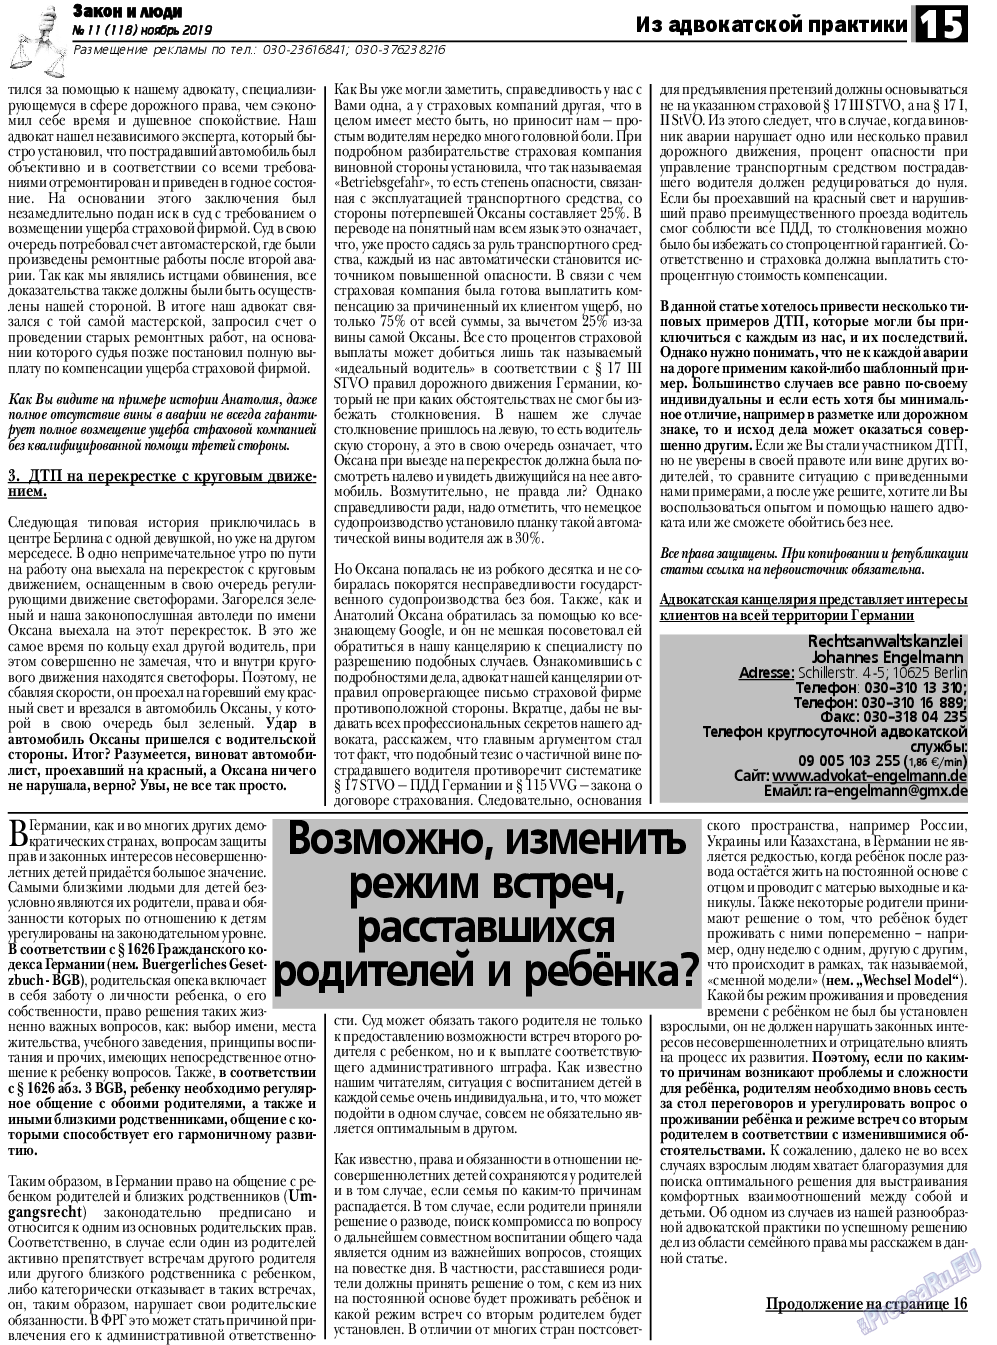 Закон и люди, газета. 2019 №11 стр.15